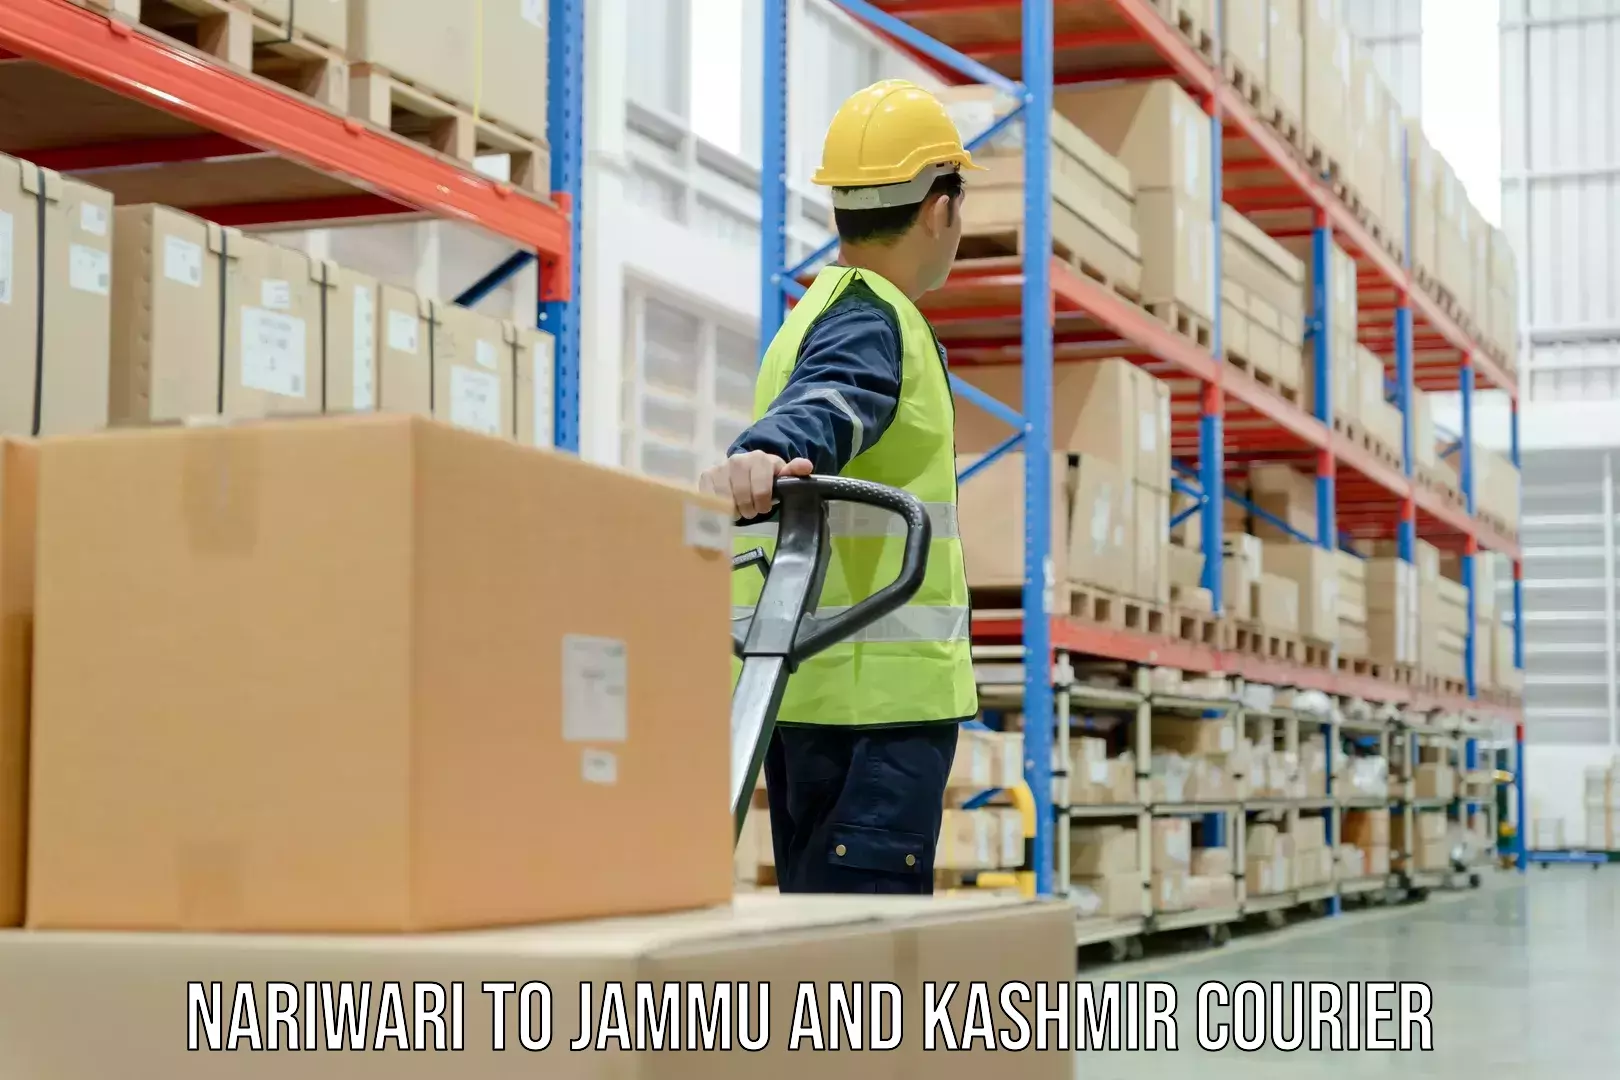 Multi-city courier Nariwari to Jammu and Kashmir